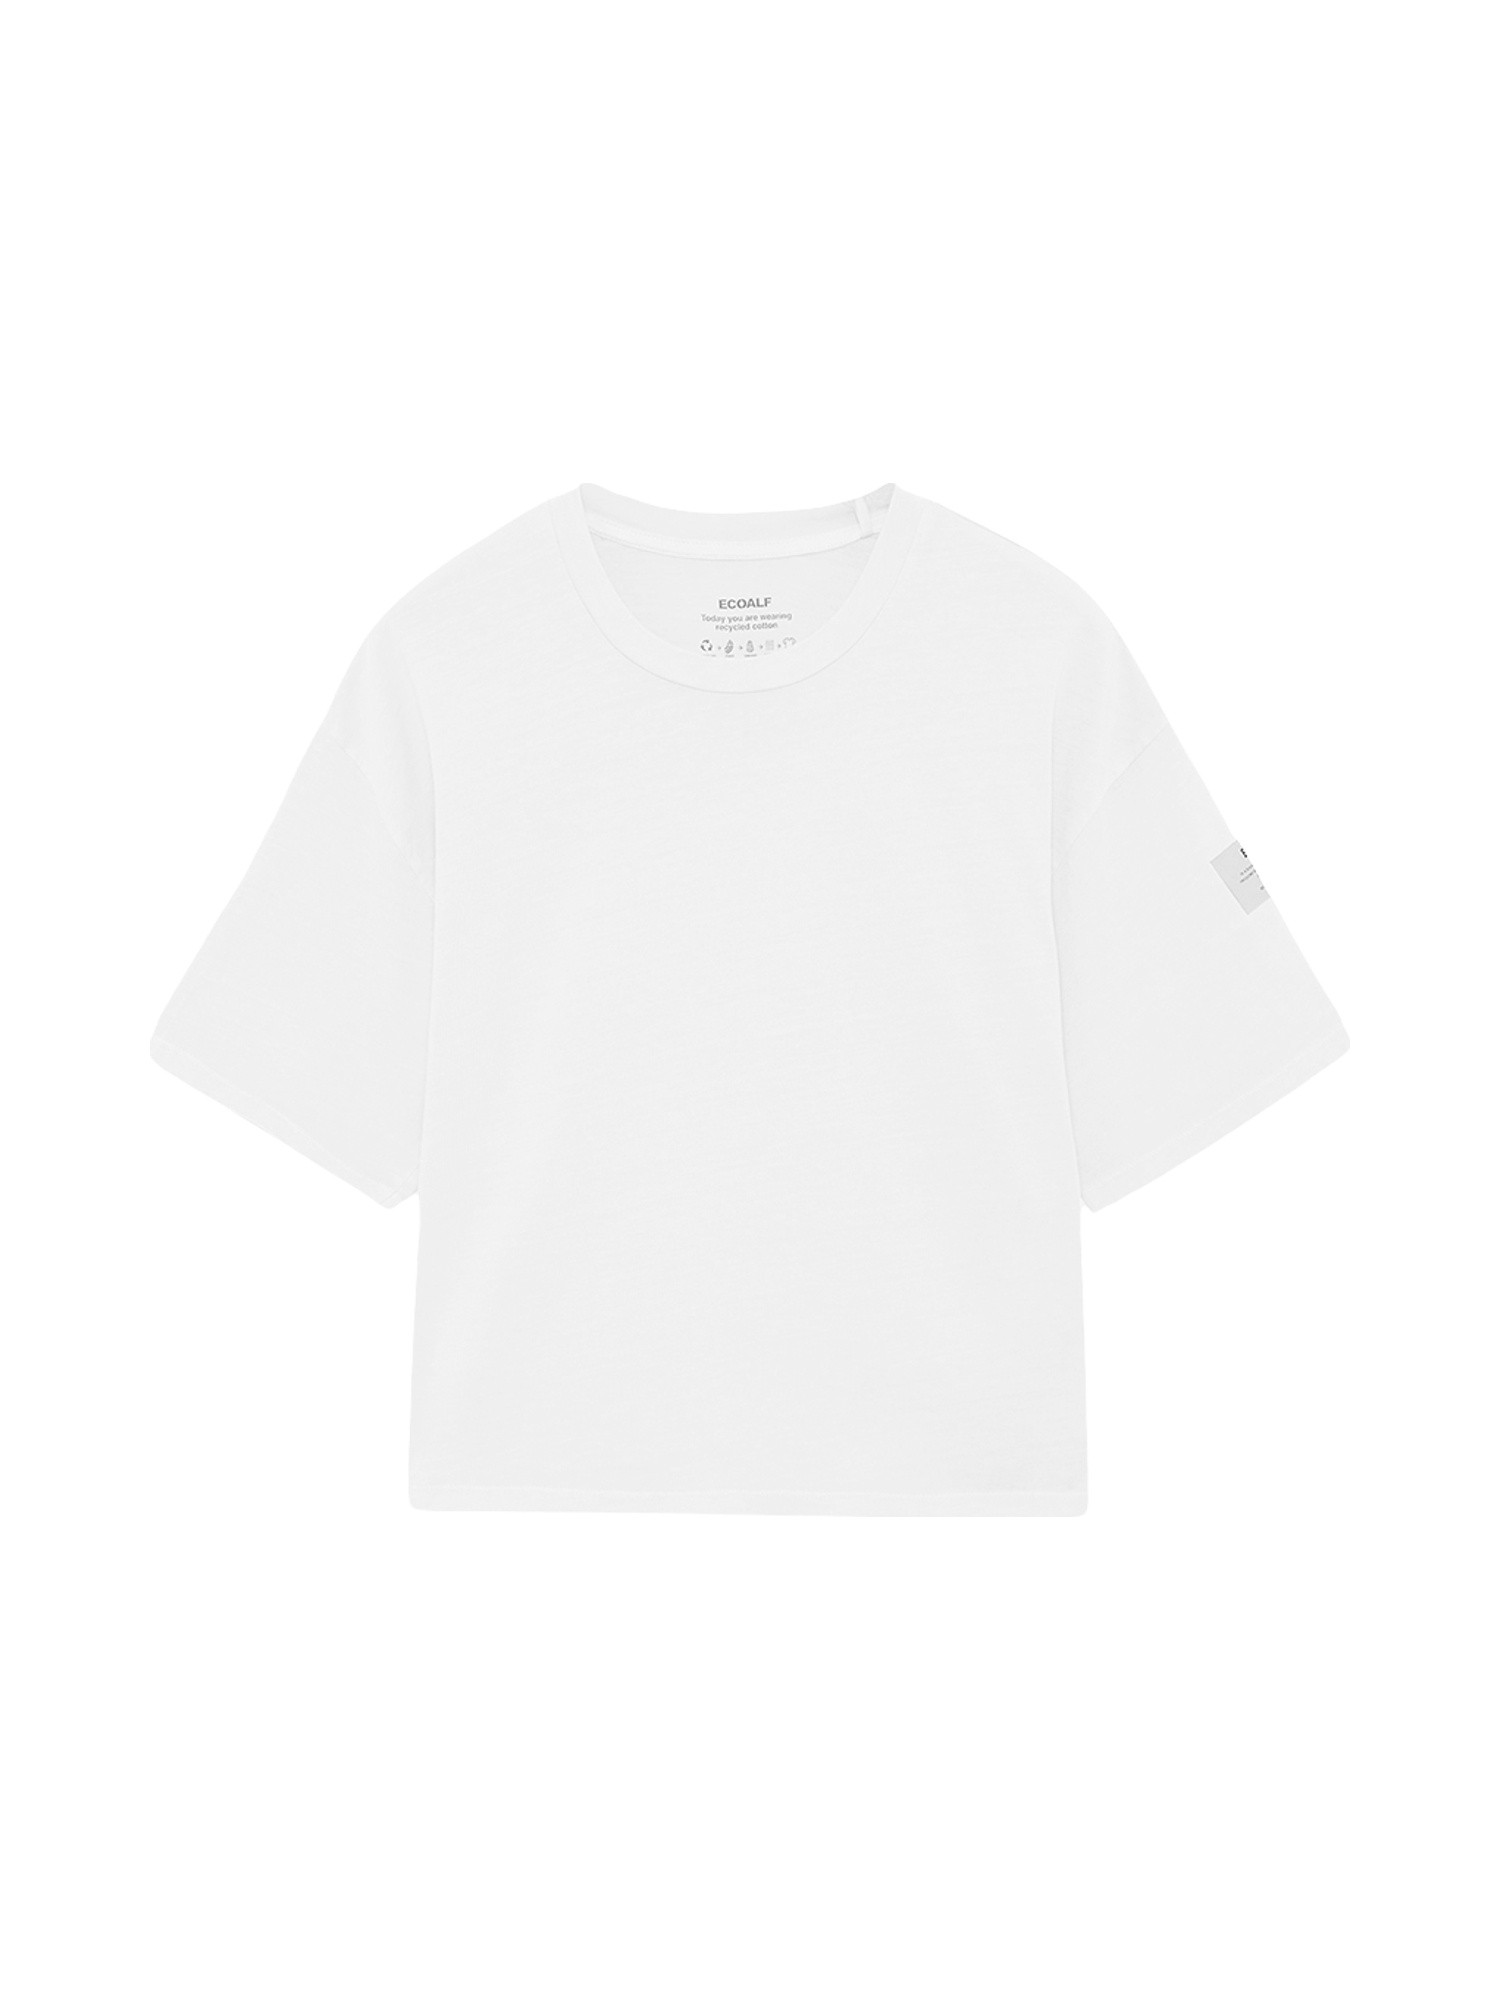 Ecoalf - T-shirt Living oversize, Bianco, large image number 0